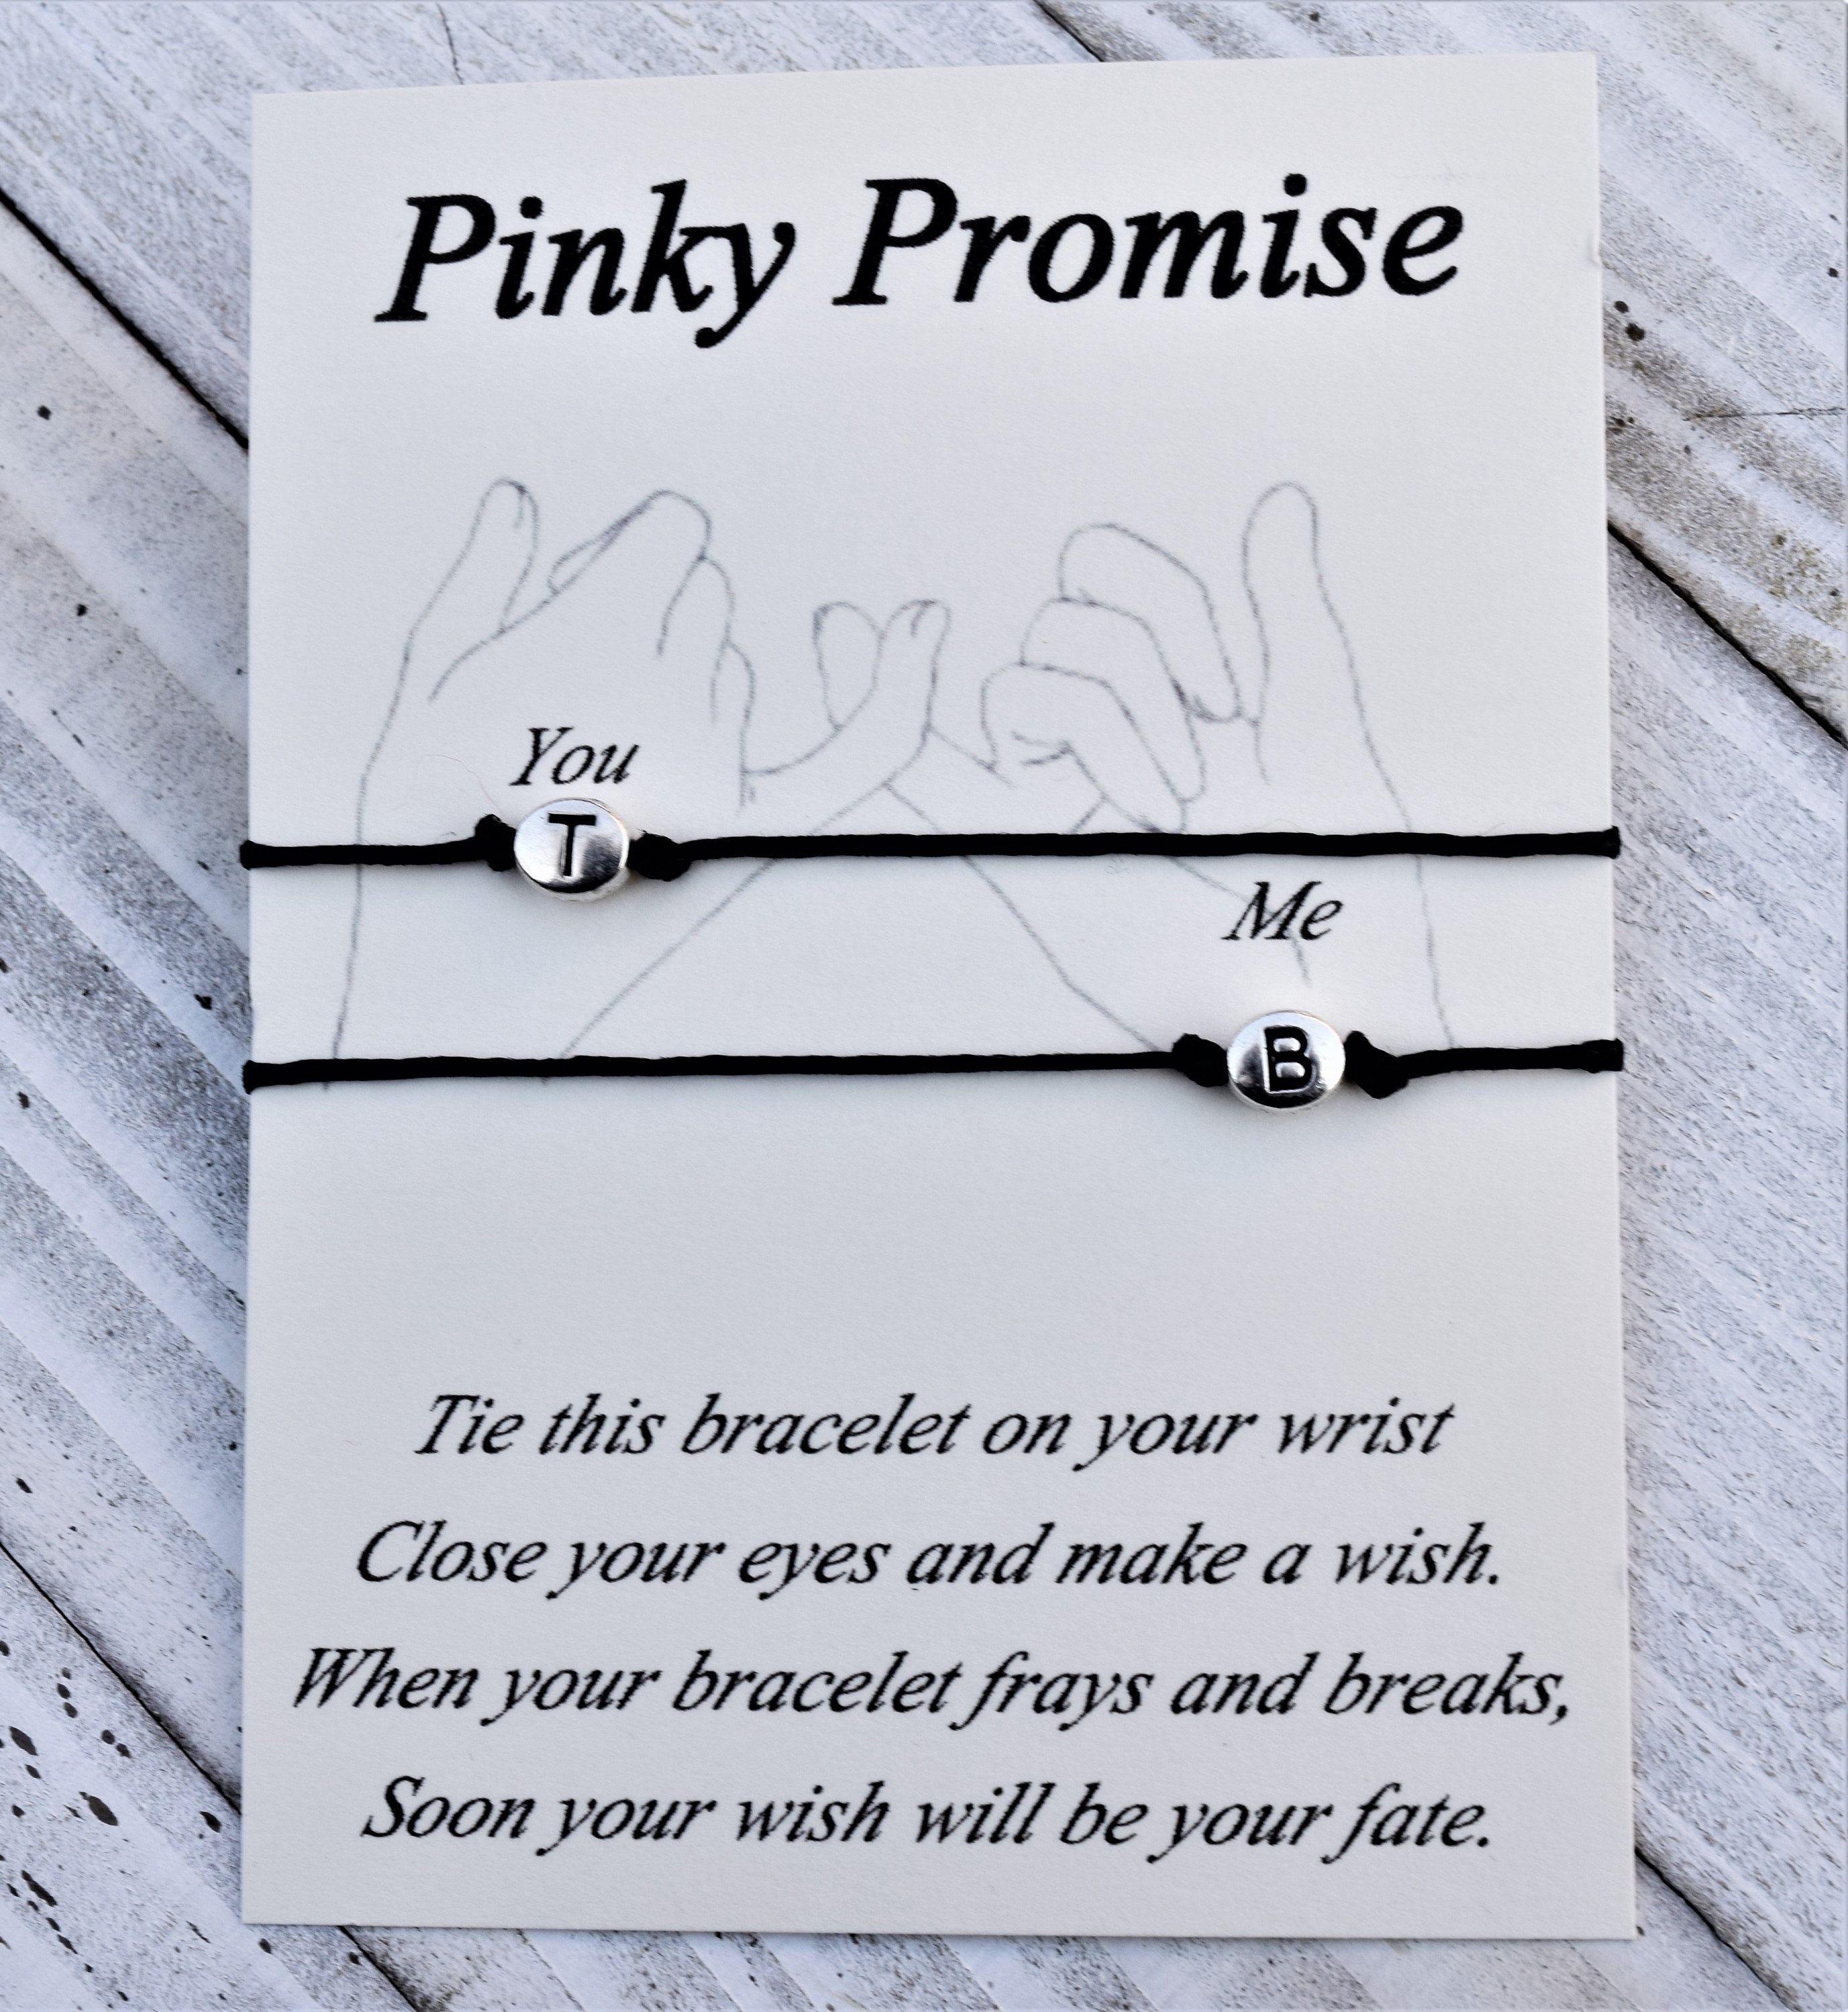 Pinky Promise wish bracelet best friends couples wish bracelet Pinky Promise initials wish bracelet -   17 diy projects For Couples friends ideas